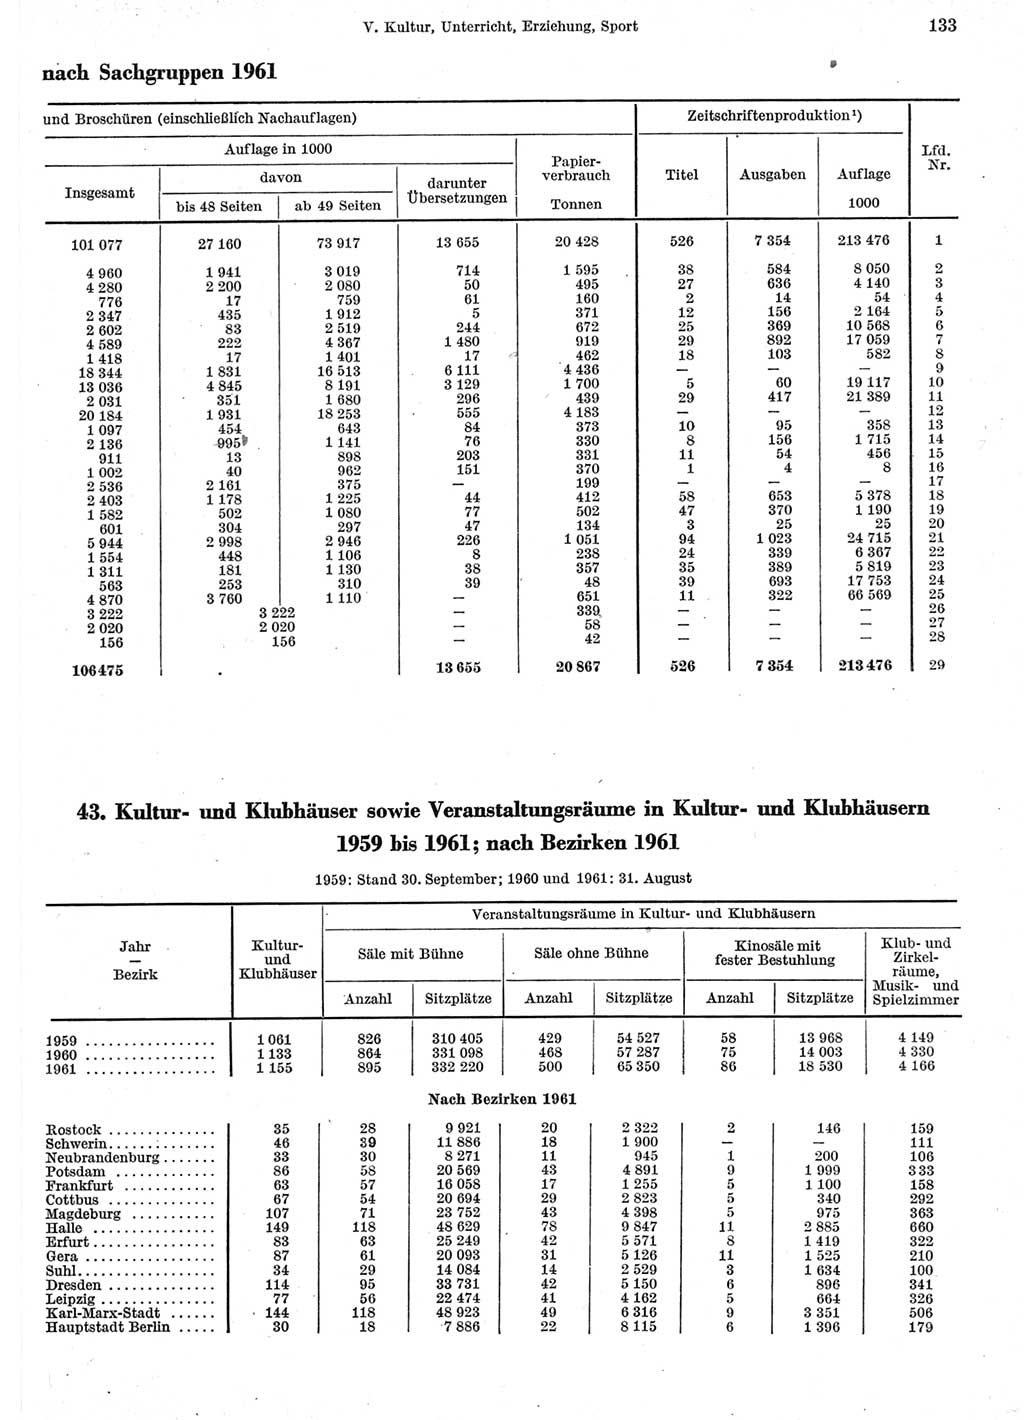 Statistisches Jahrbuch der Deutschen Demokratischen Republik (DDR) 1962, Seite 133 (Stat. Jb. DDR 1962, S. 133)